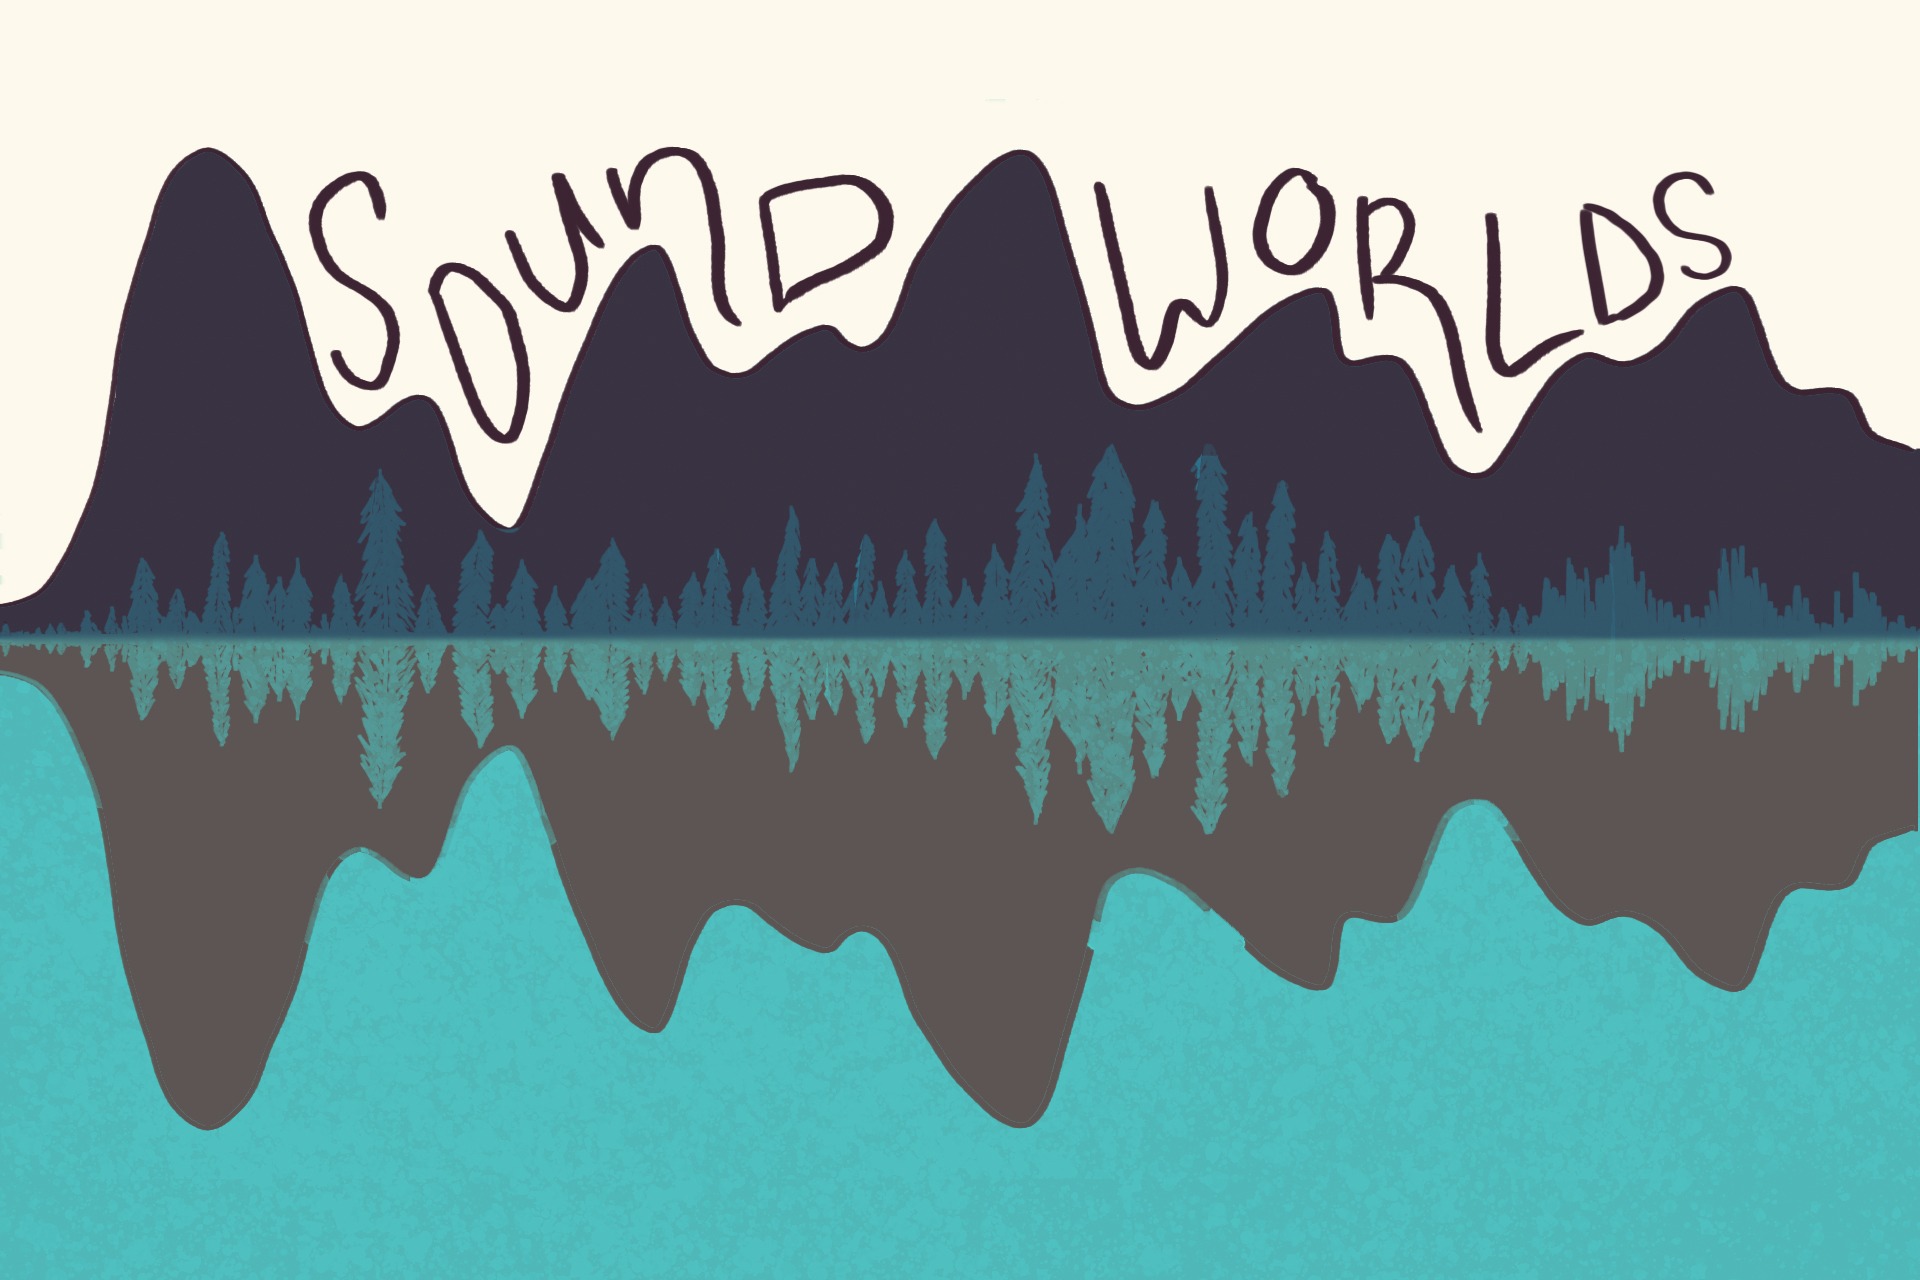 Sound Worlds